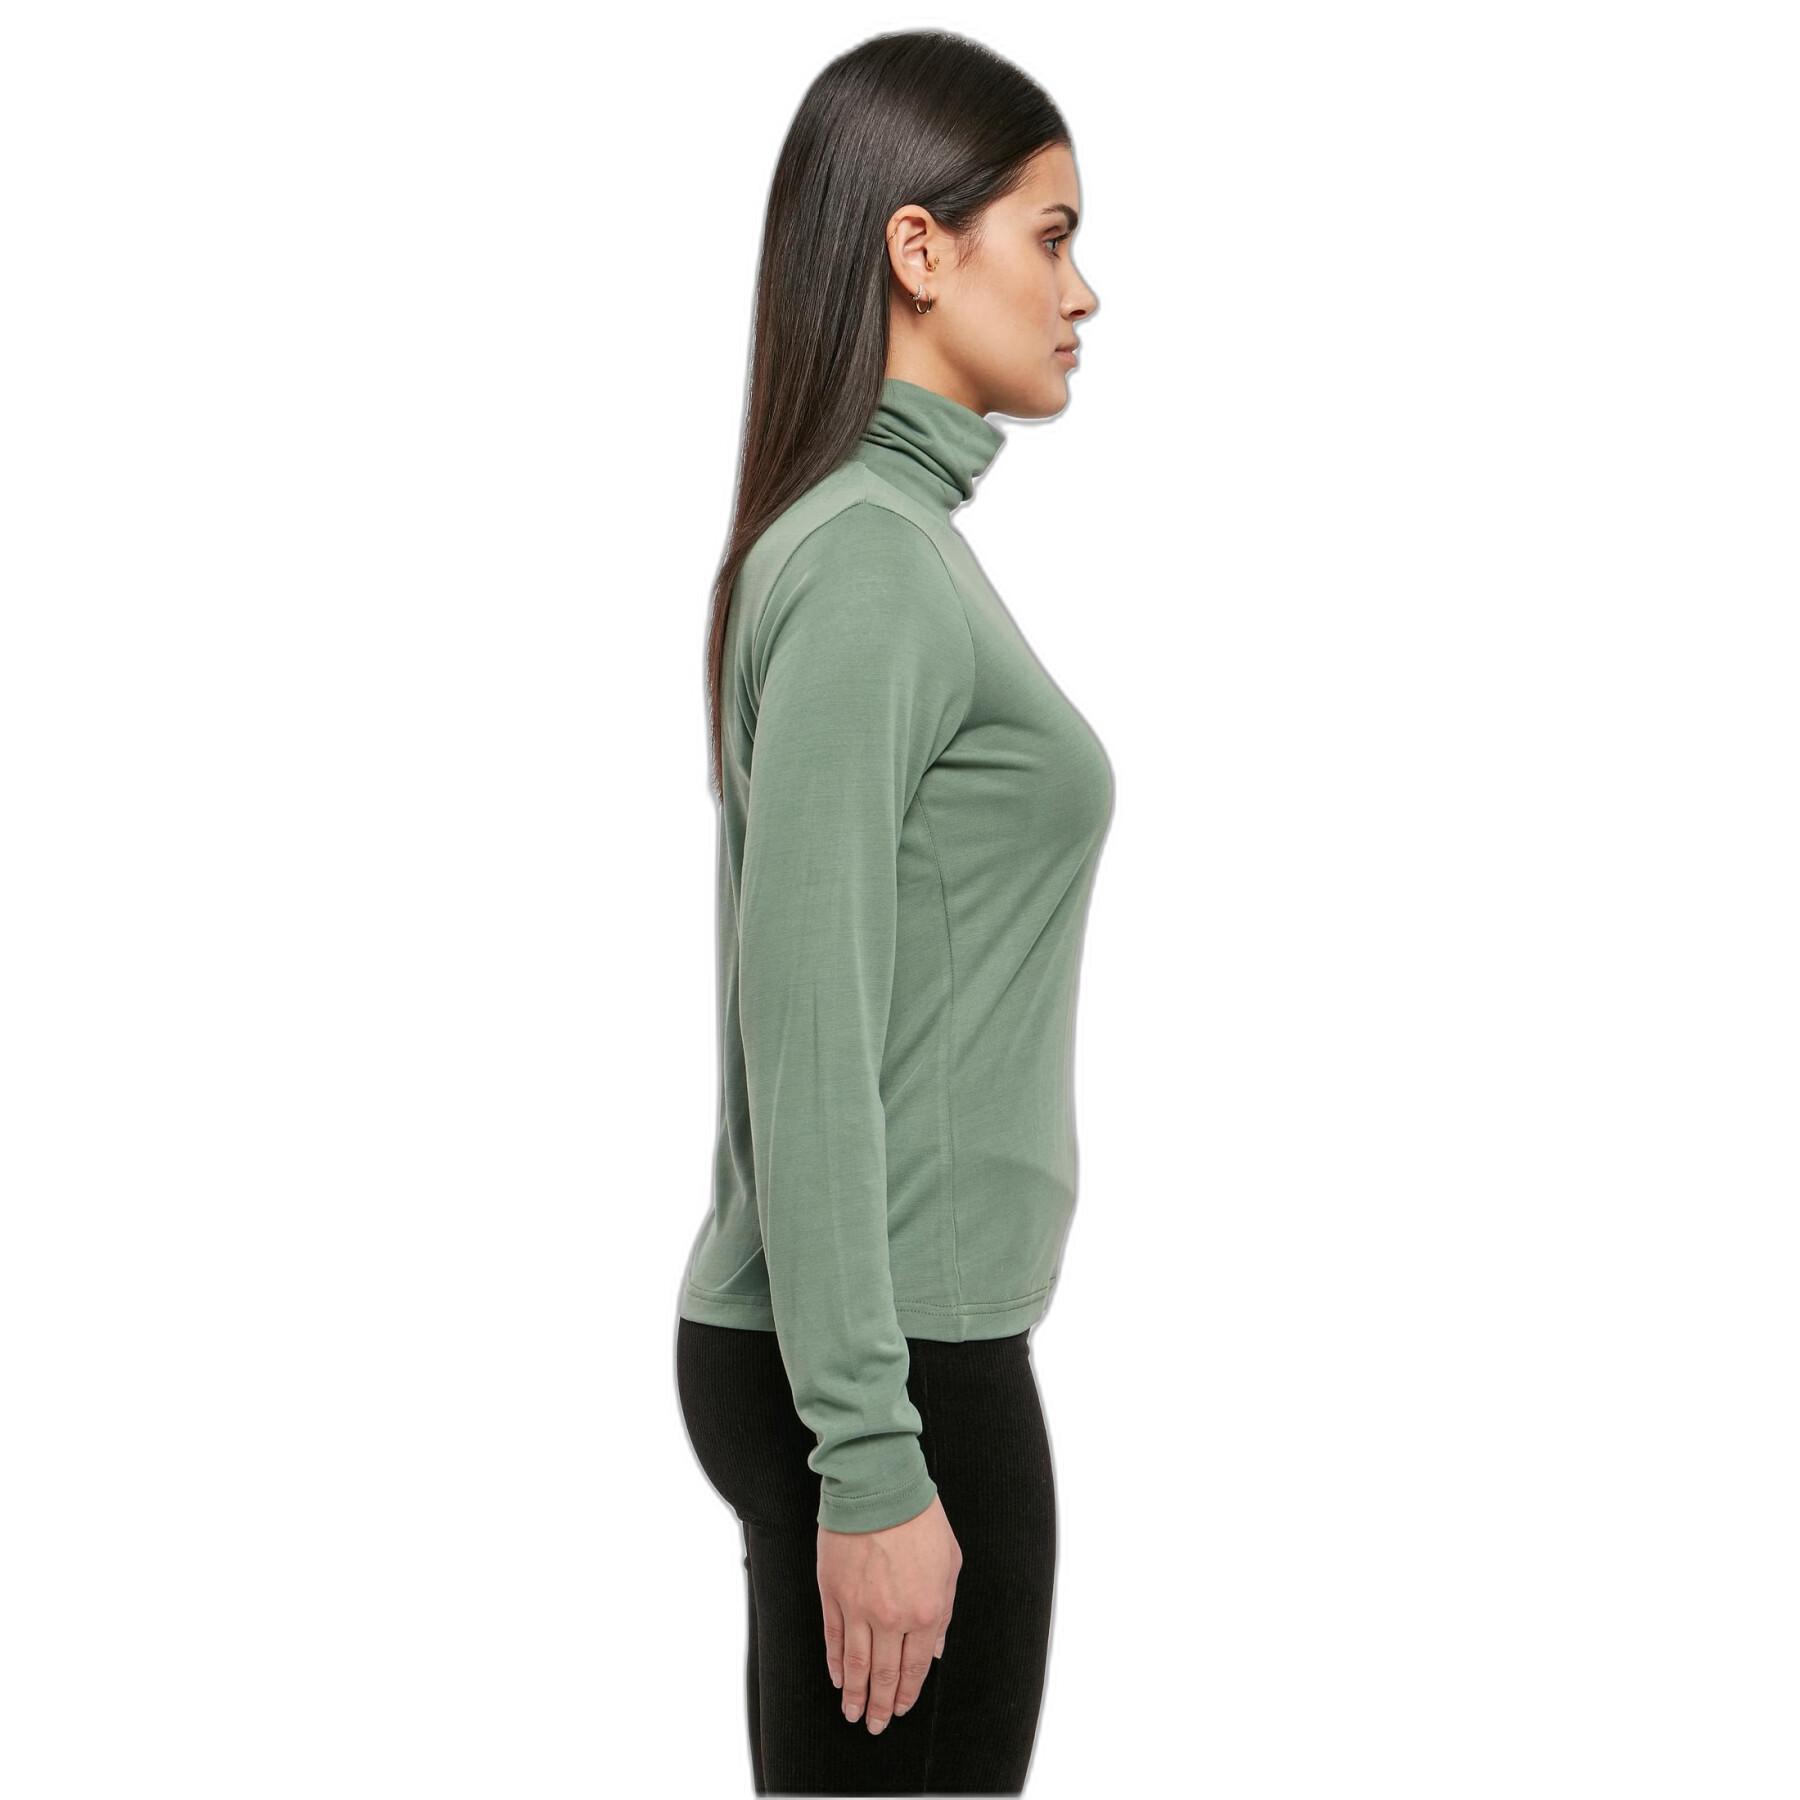 Women's long sleeve turtleneck sweatshirt in modal Urban Classics GT